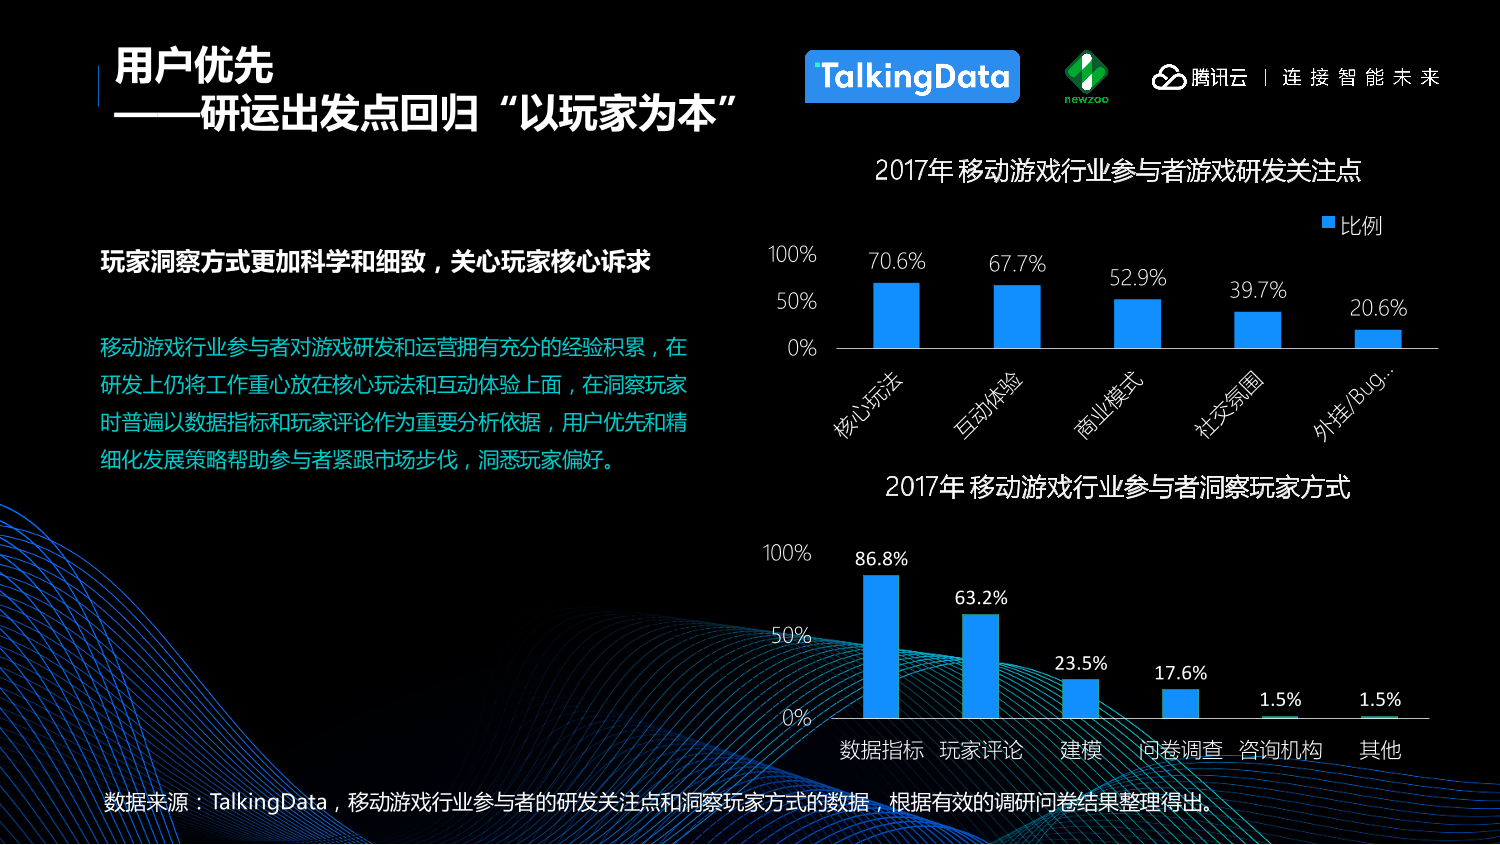 中国移动游戏行业趋势报告_1527559577212-10